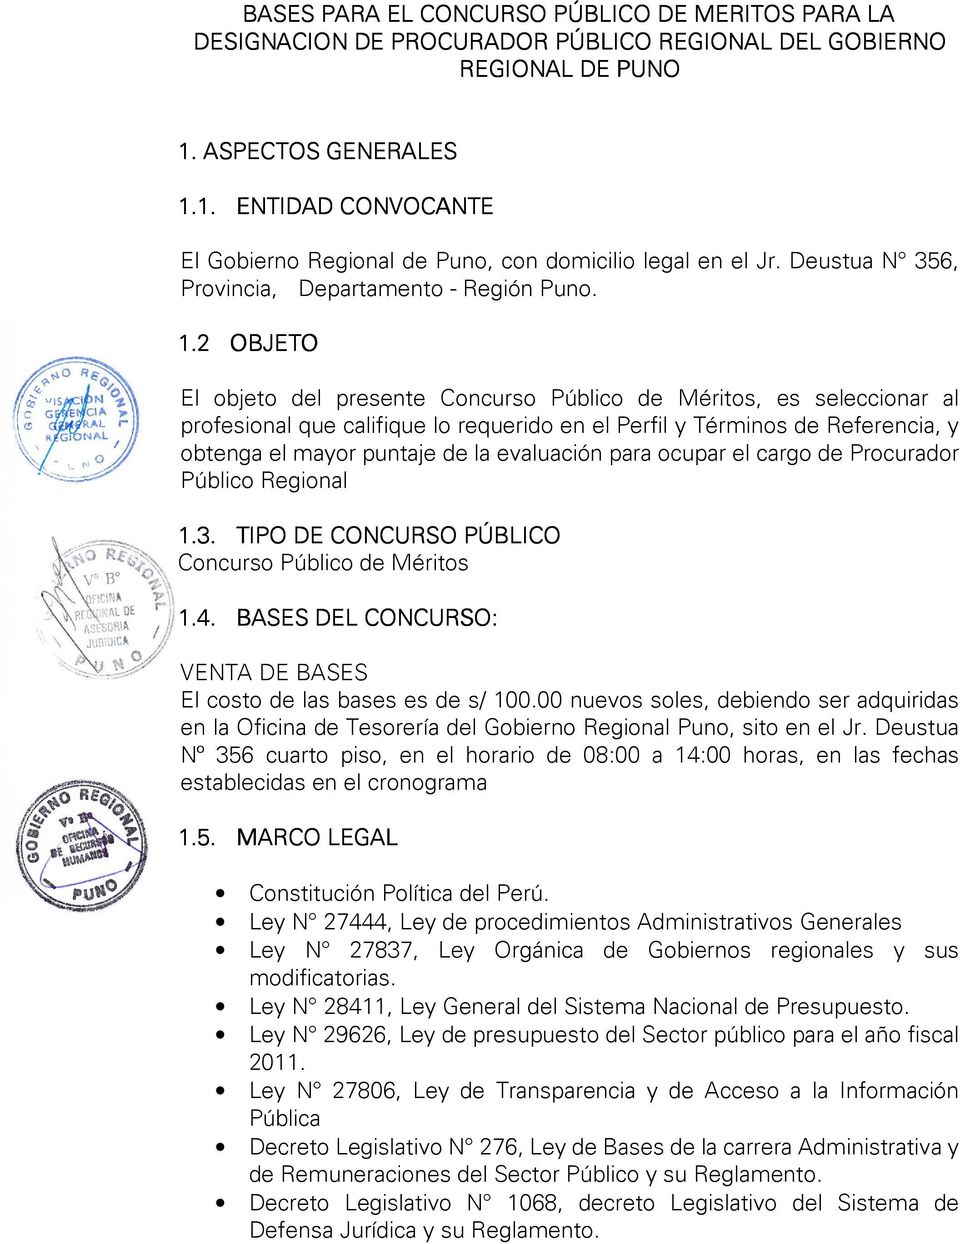 1. ENTIDAD CONVOCANTE El Gobierno Regional de Puno, con domicilio legal en el Jr. Deustua N 356, Provincia, Departamento - Región Puno. 1.